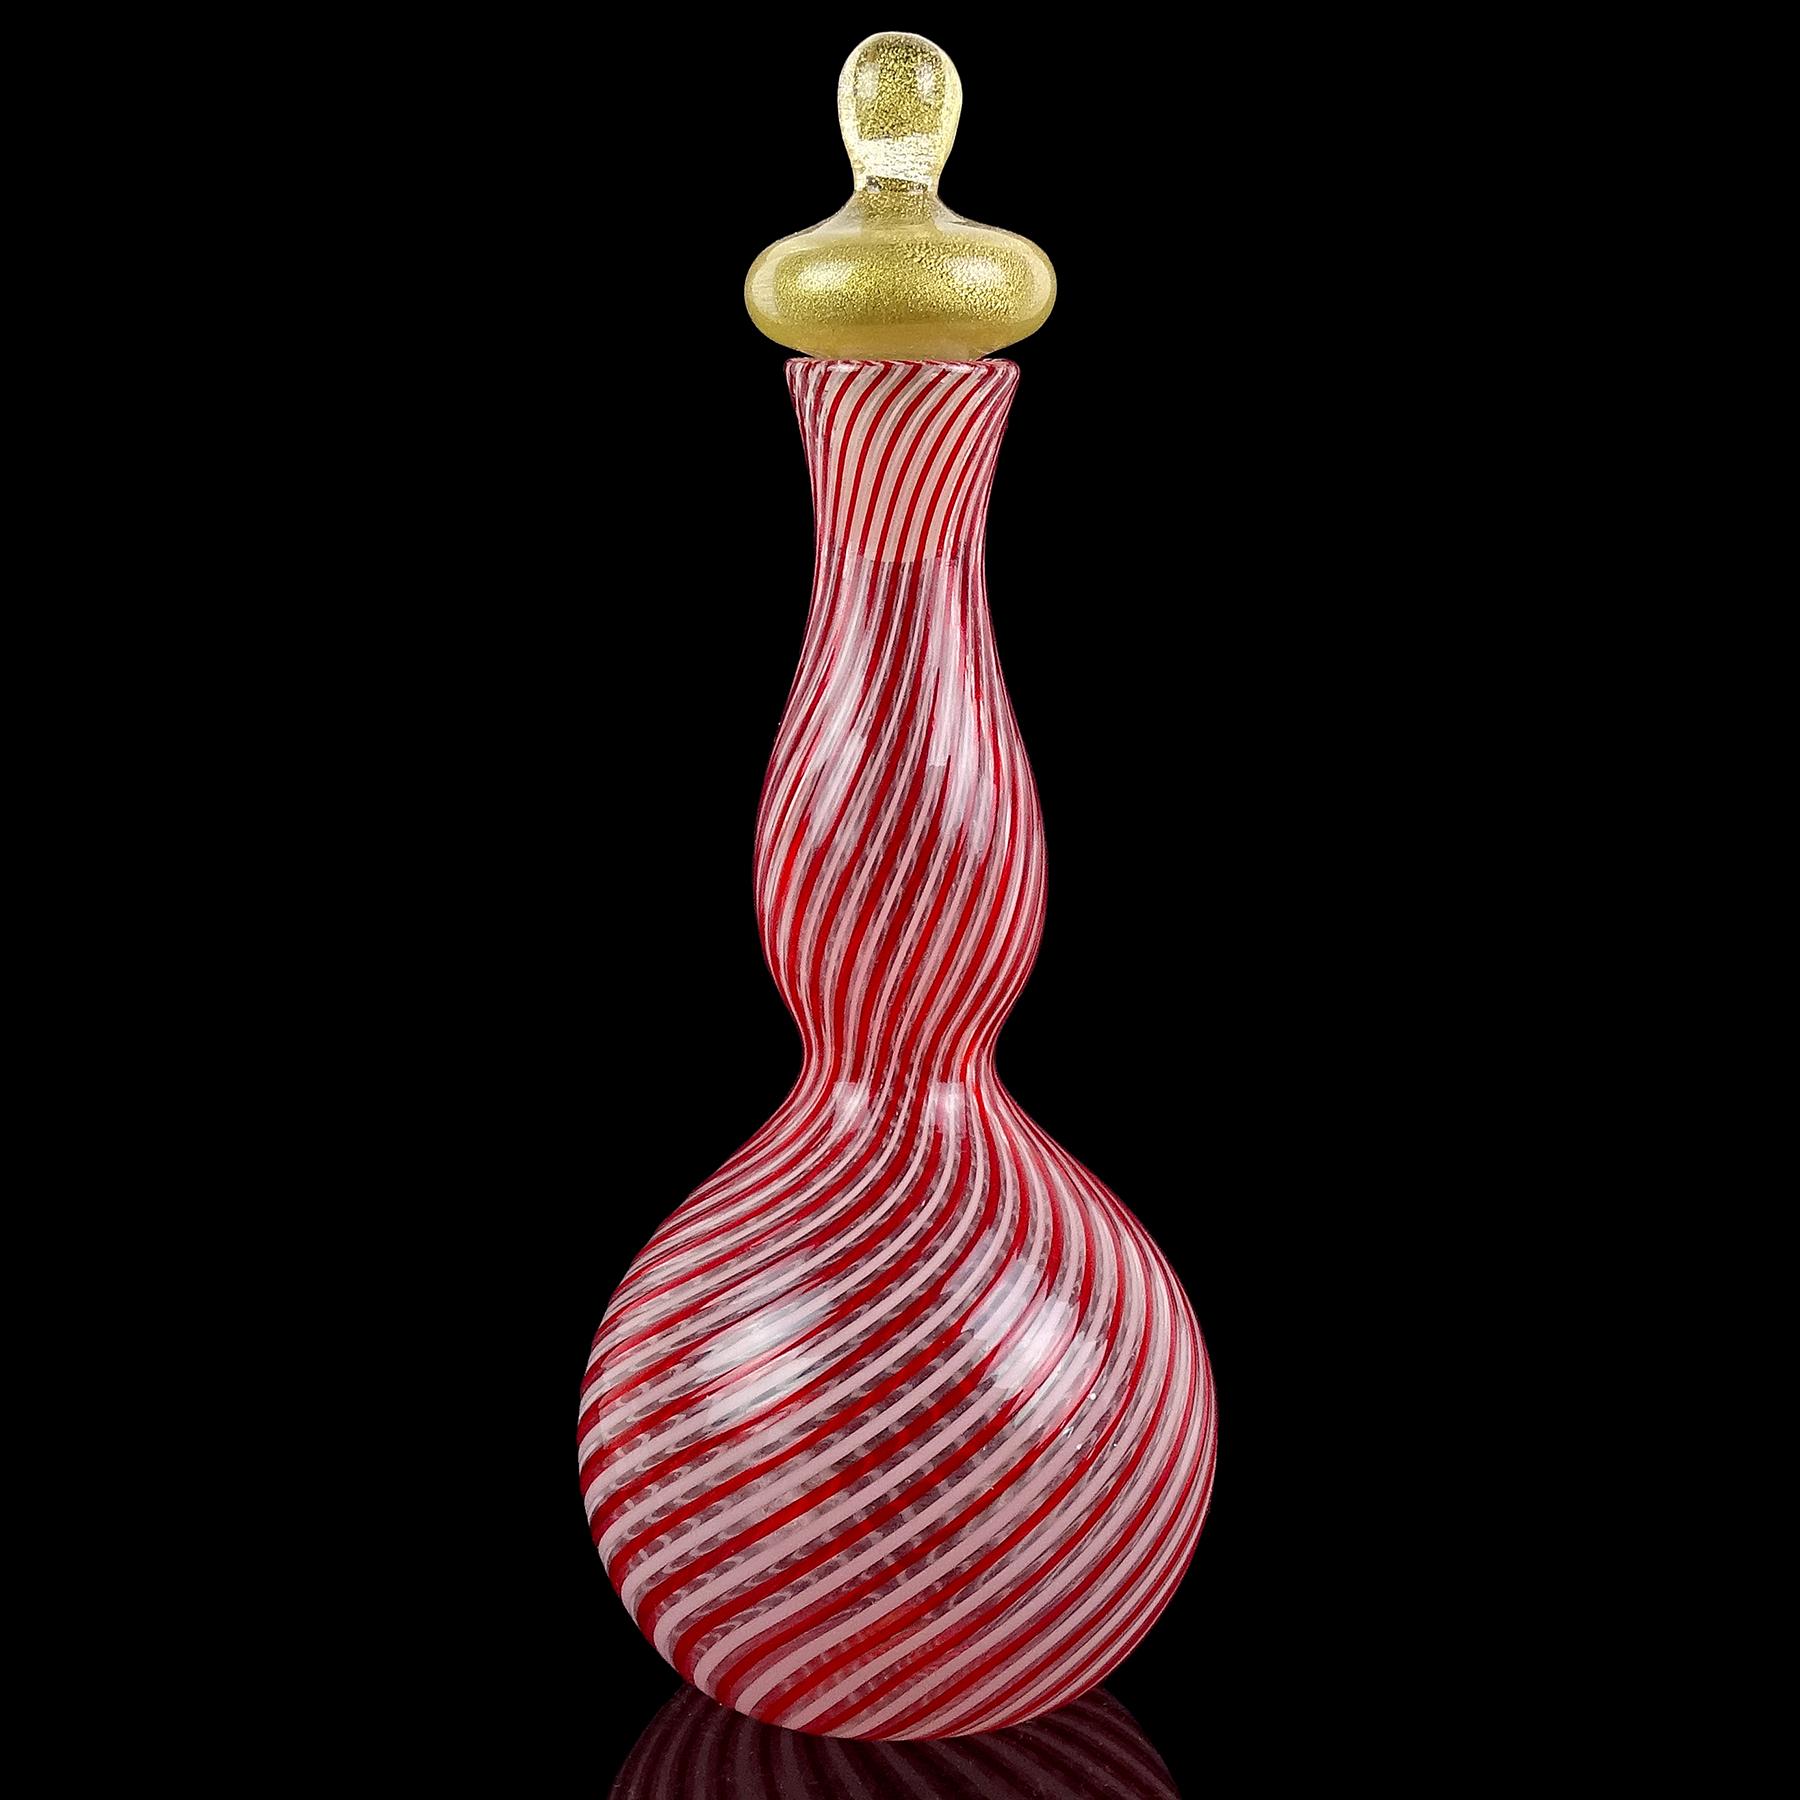 Magnifique décanteur vintage Murano soufflé à la main, rouge et blanc, avec des mouchetures d'or. Carafe pour bouteille Genie en verre d'art italien. Documenté au designer Dino Martens pour Aureliano Toso. Une pièce similaire est présentée sur le